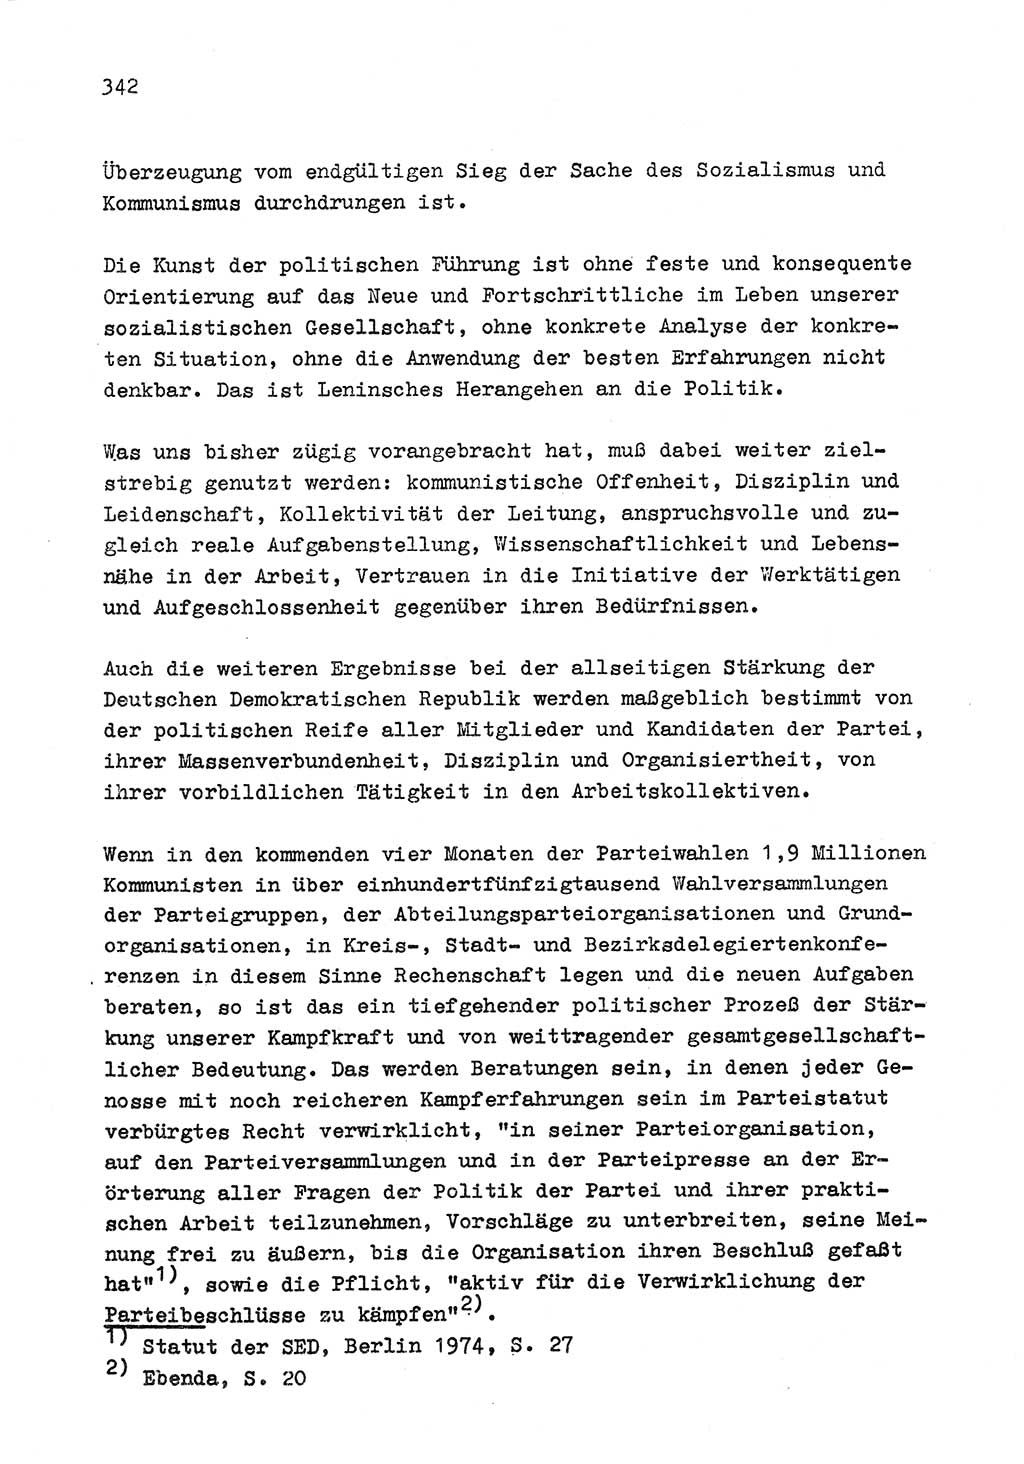 Zu Fragen der Parteiarbeit [Sozialistische Einheitspartei Deutschlands (SED) Deutsche Demokratische Republik (DDR)] 1979, Seite 342 (Fr. PA SED DDR 1979, S. 342)